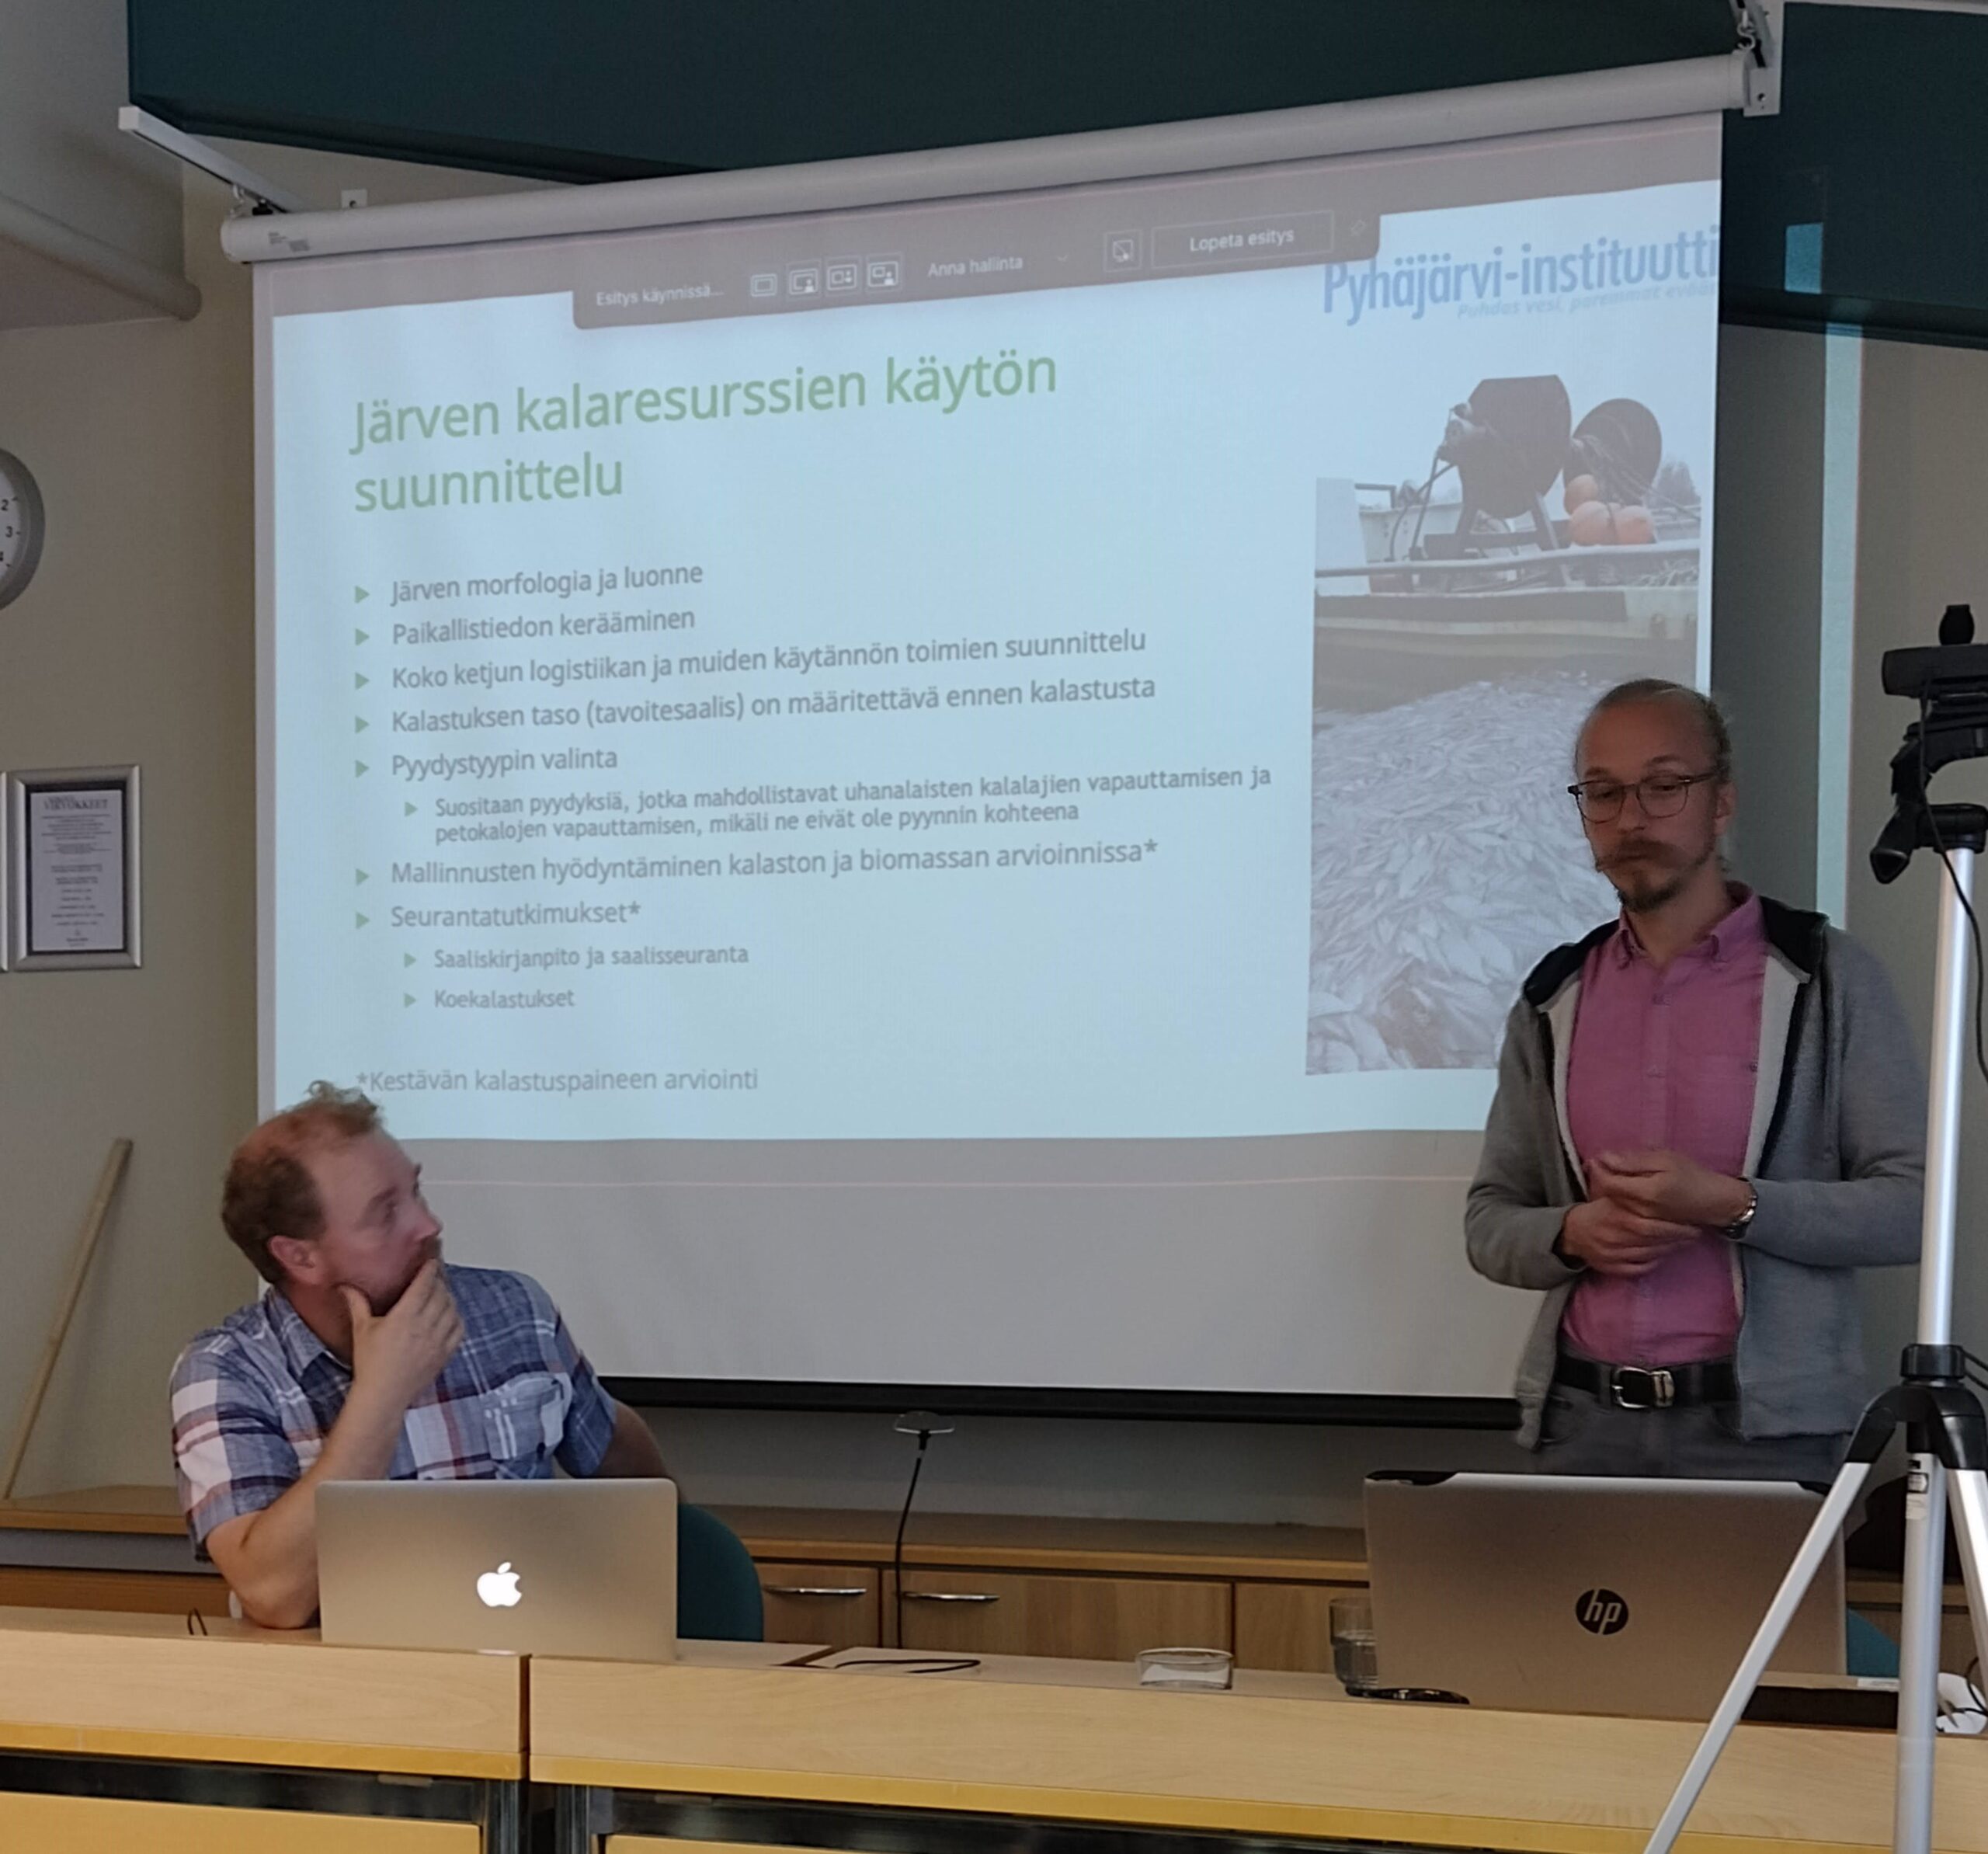 Ville Kangasniemi esittelee Pyhäjärvi-instittuutn tutkimuksia power point eistyksen kera